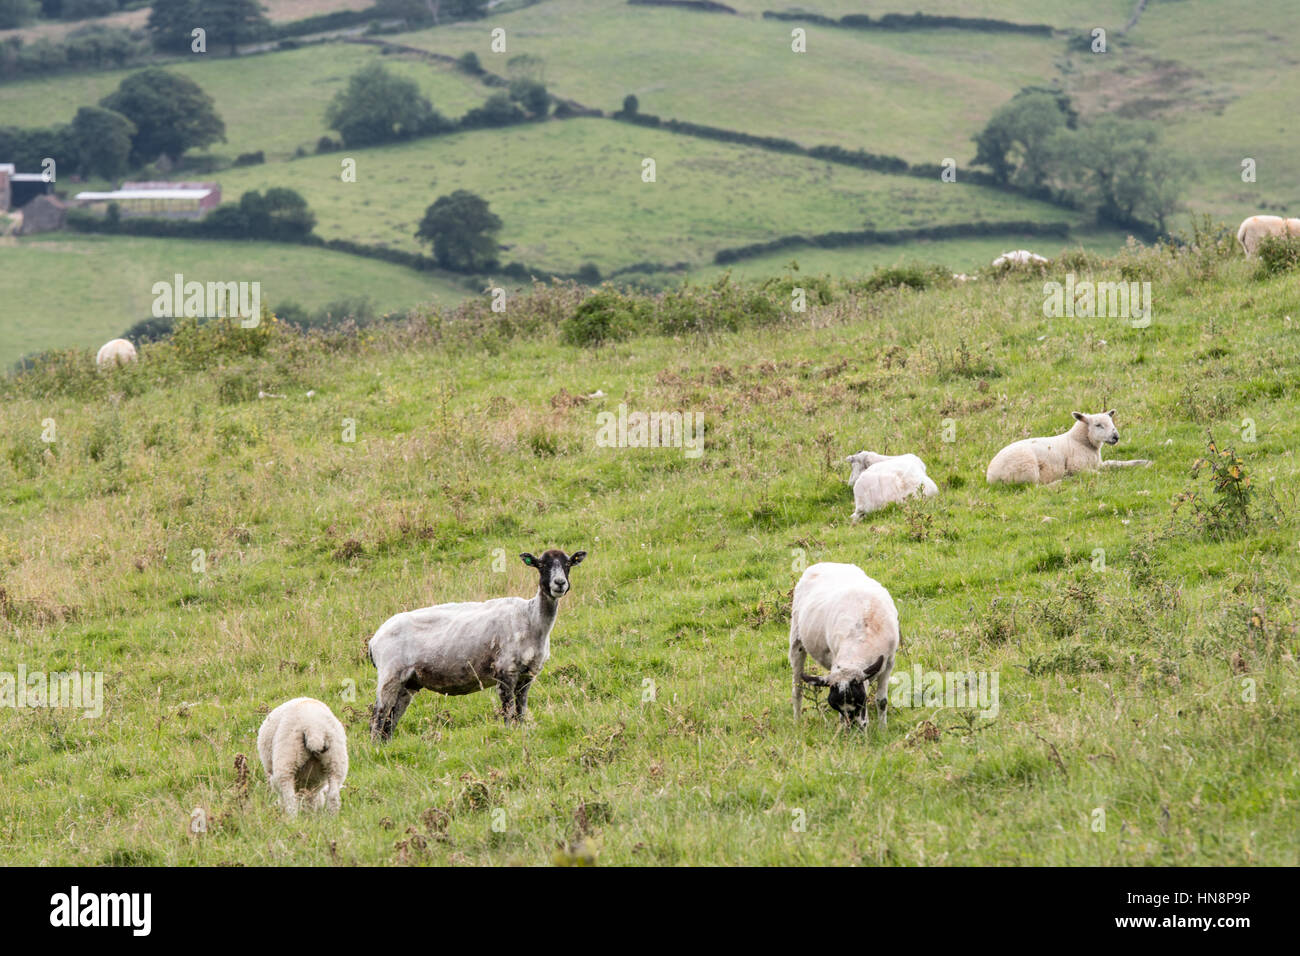 Royaume-uni, Angleterre, dans le Yorkshire - des moutons paissant dans un champ à la périphérie d'un petit village de pêcheurs appelé Robin Hood's Bay, situé sur la côte de l'Y Banque D'Images